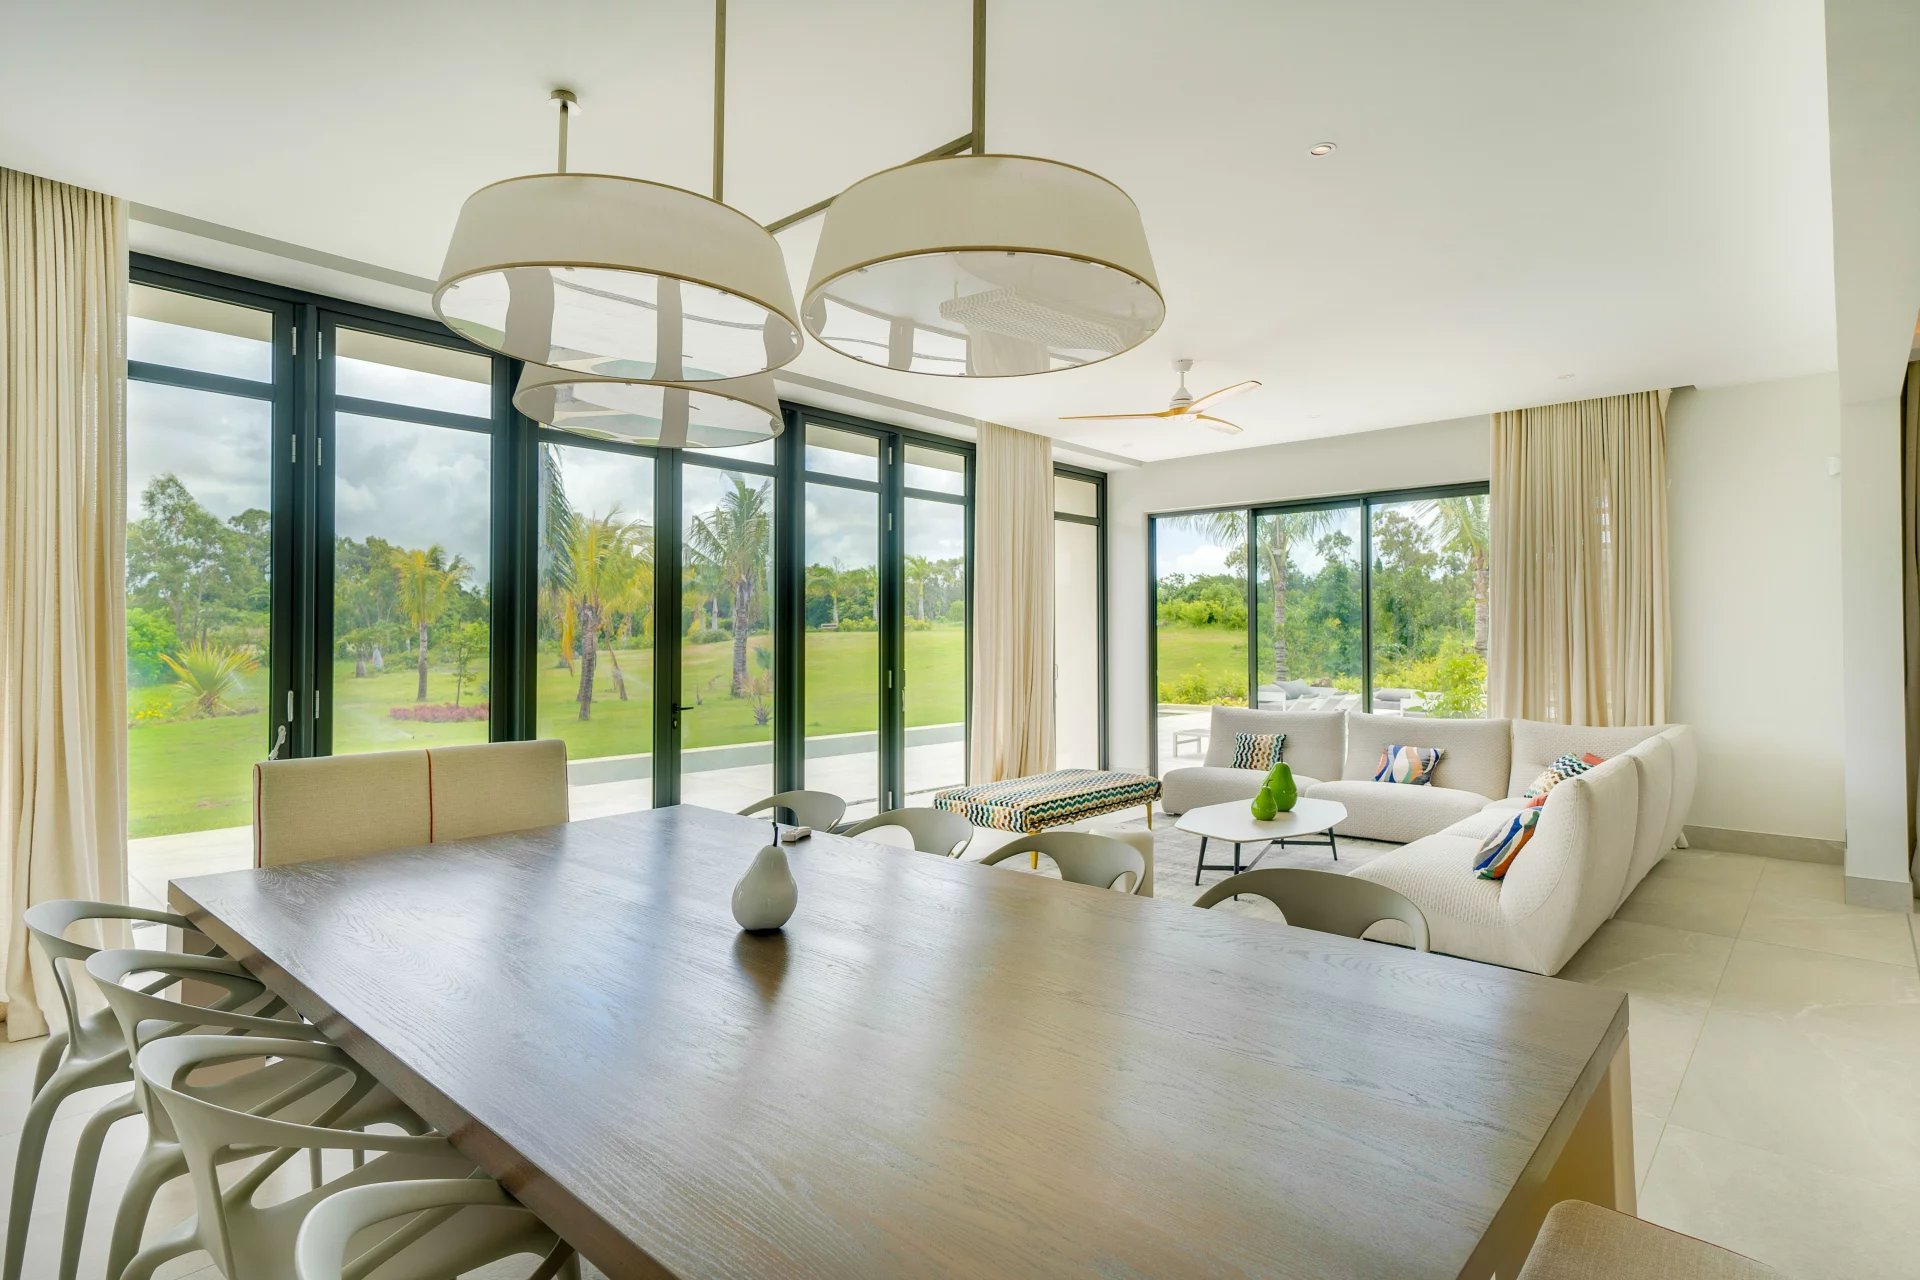 BEAU CHAMP - Villa haut de gamme sur un domaine golfique - 5 chambres